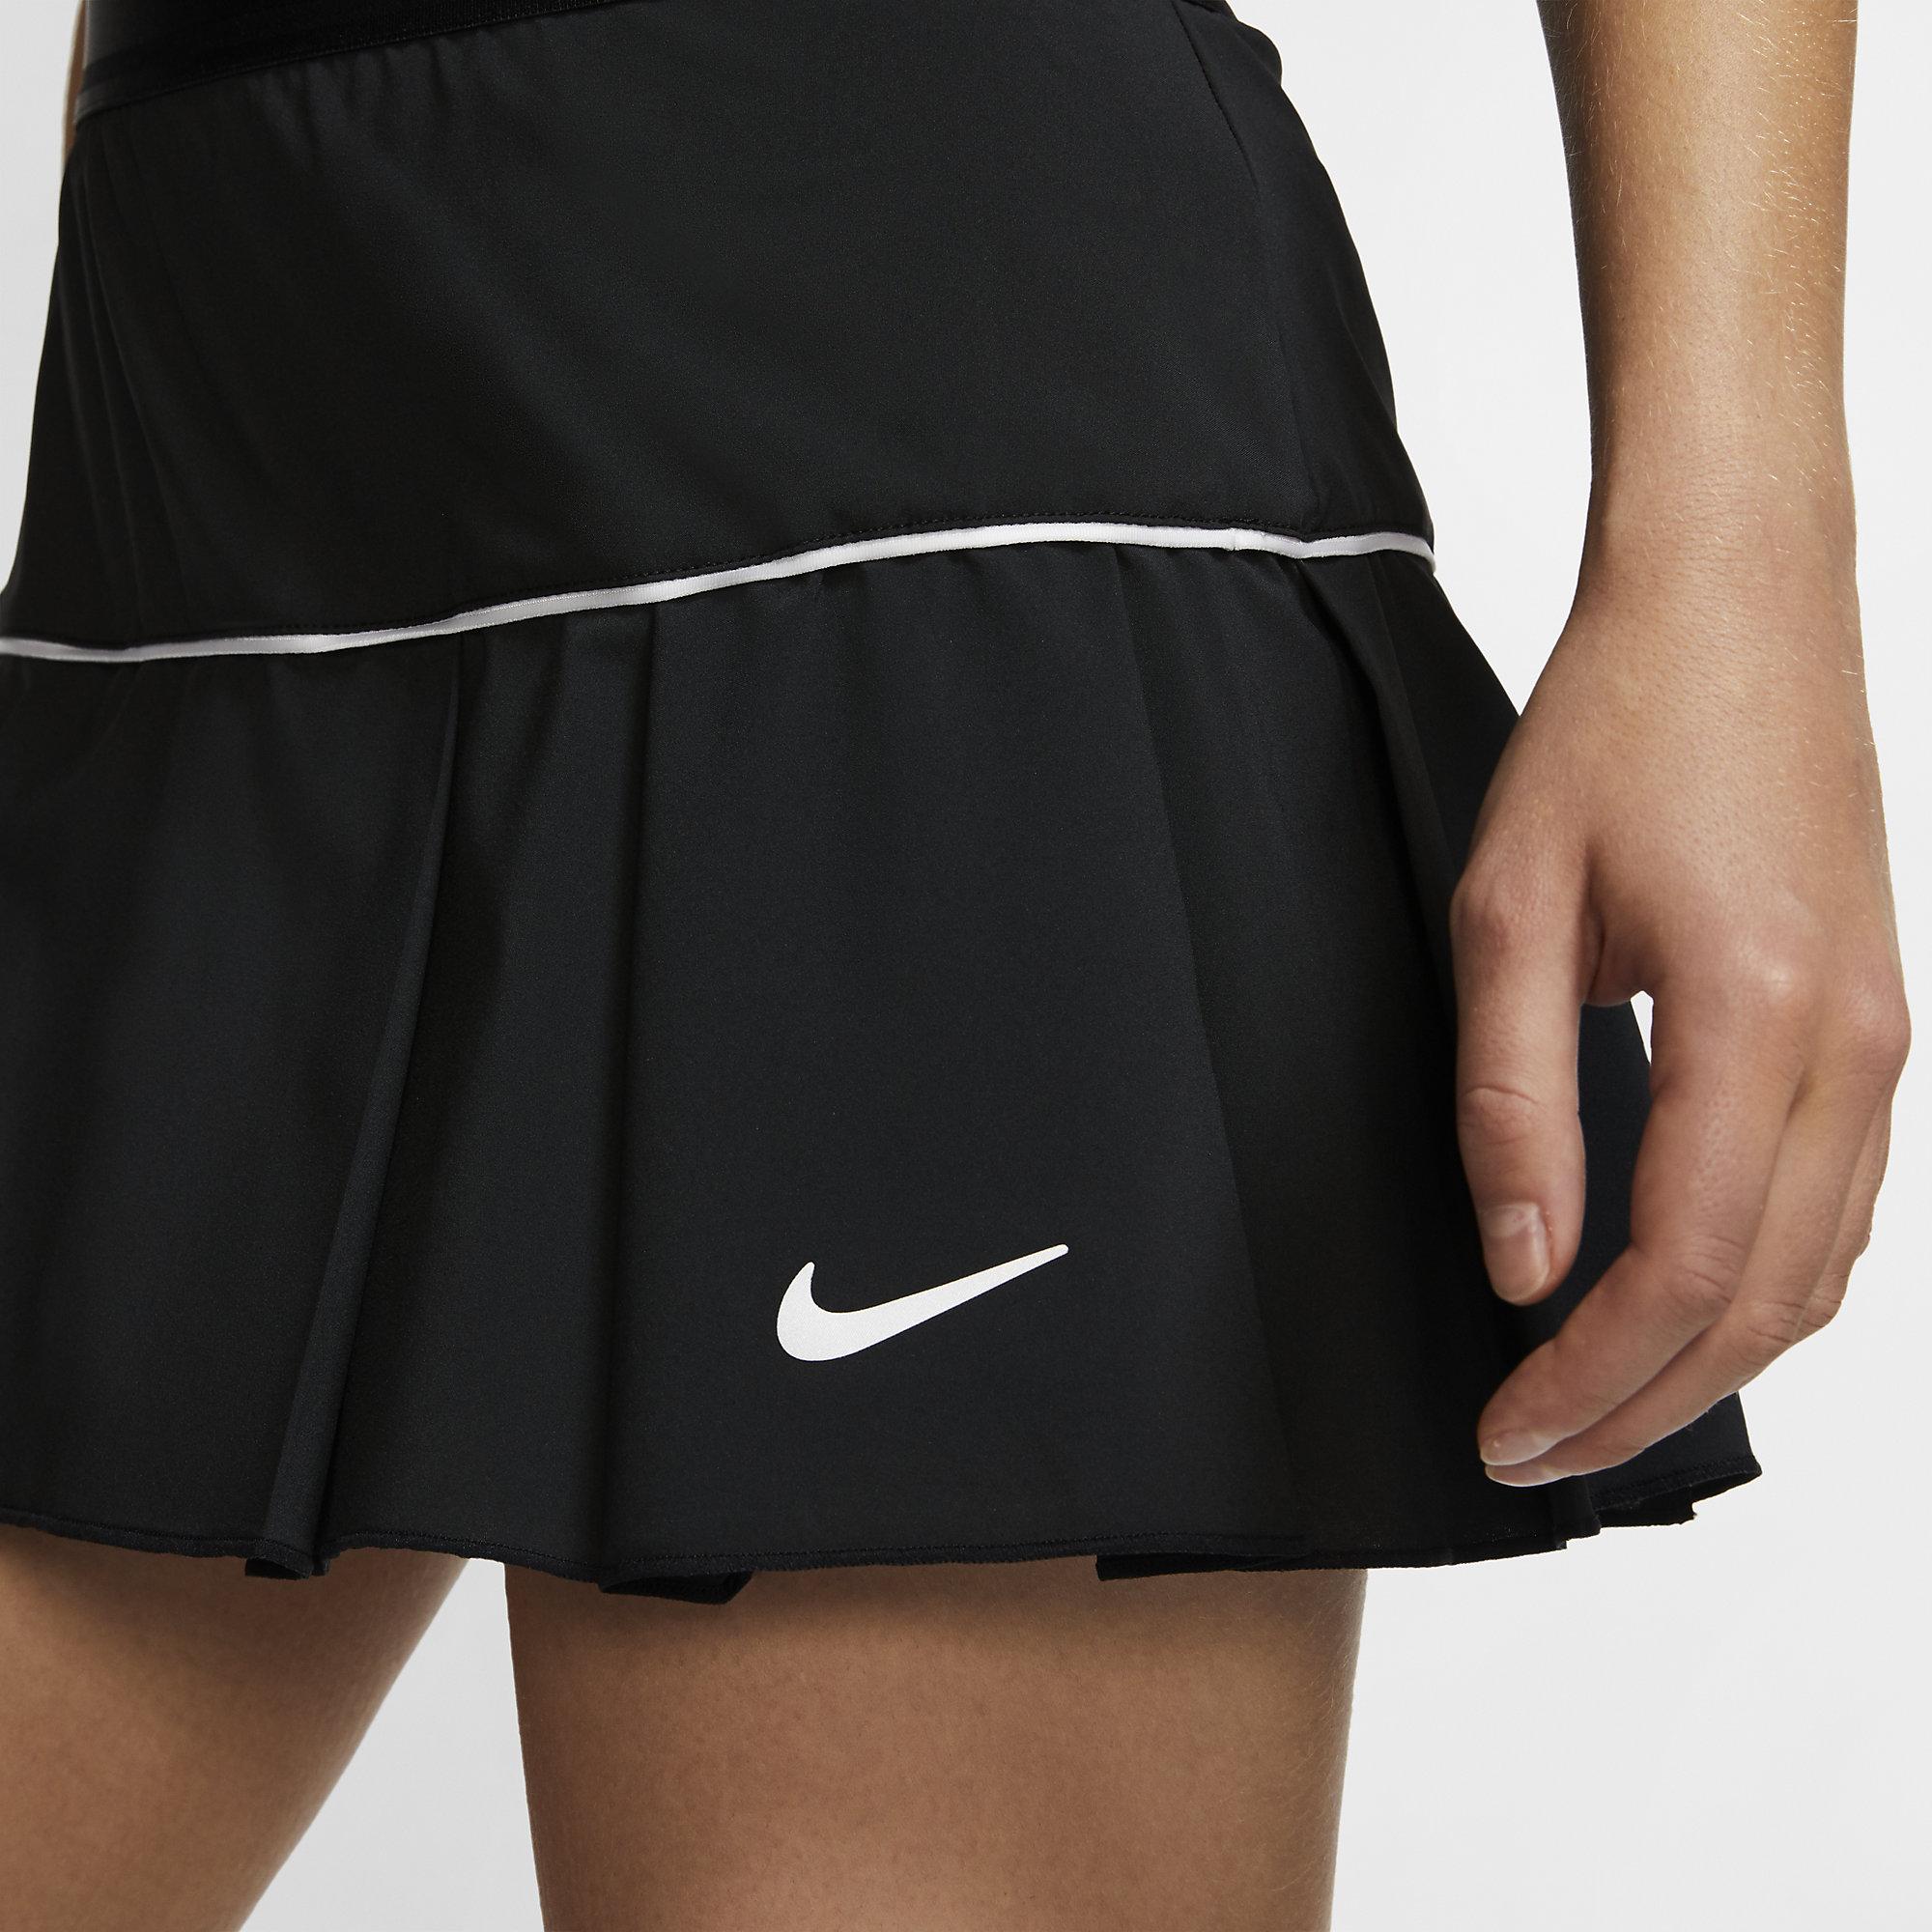 Nike Womens Victory Tennis Skirt - Black - Tennisnuts.com